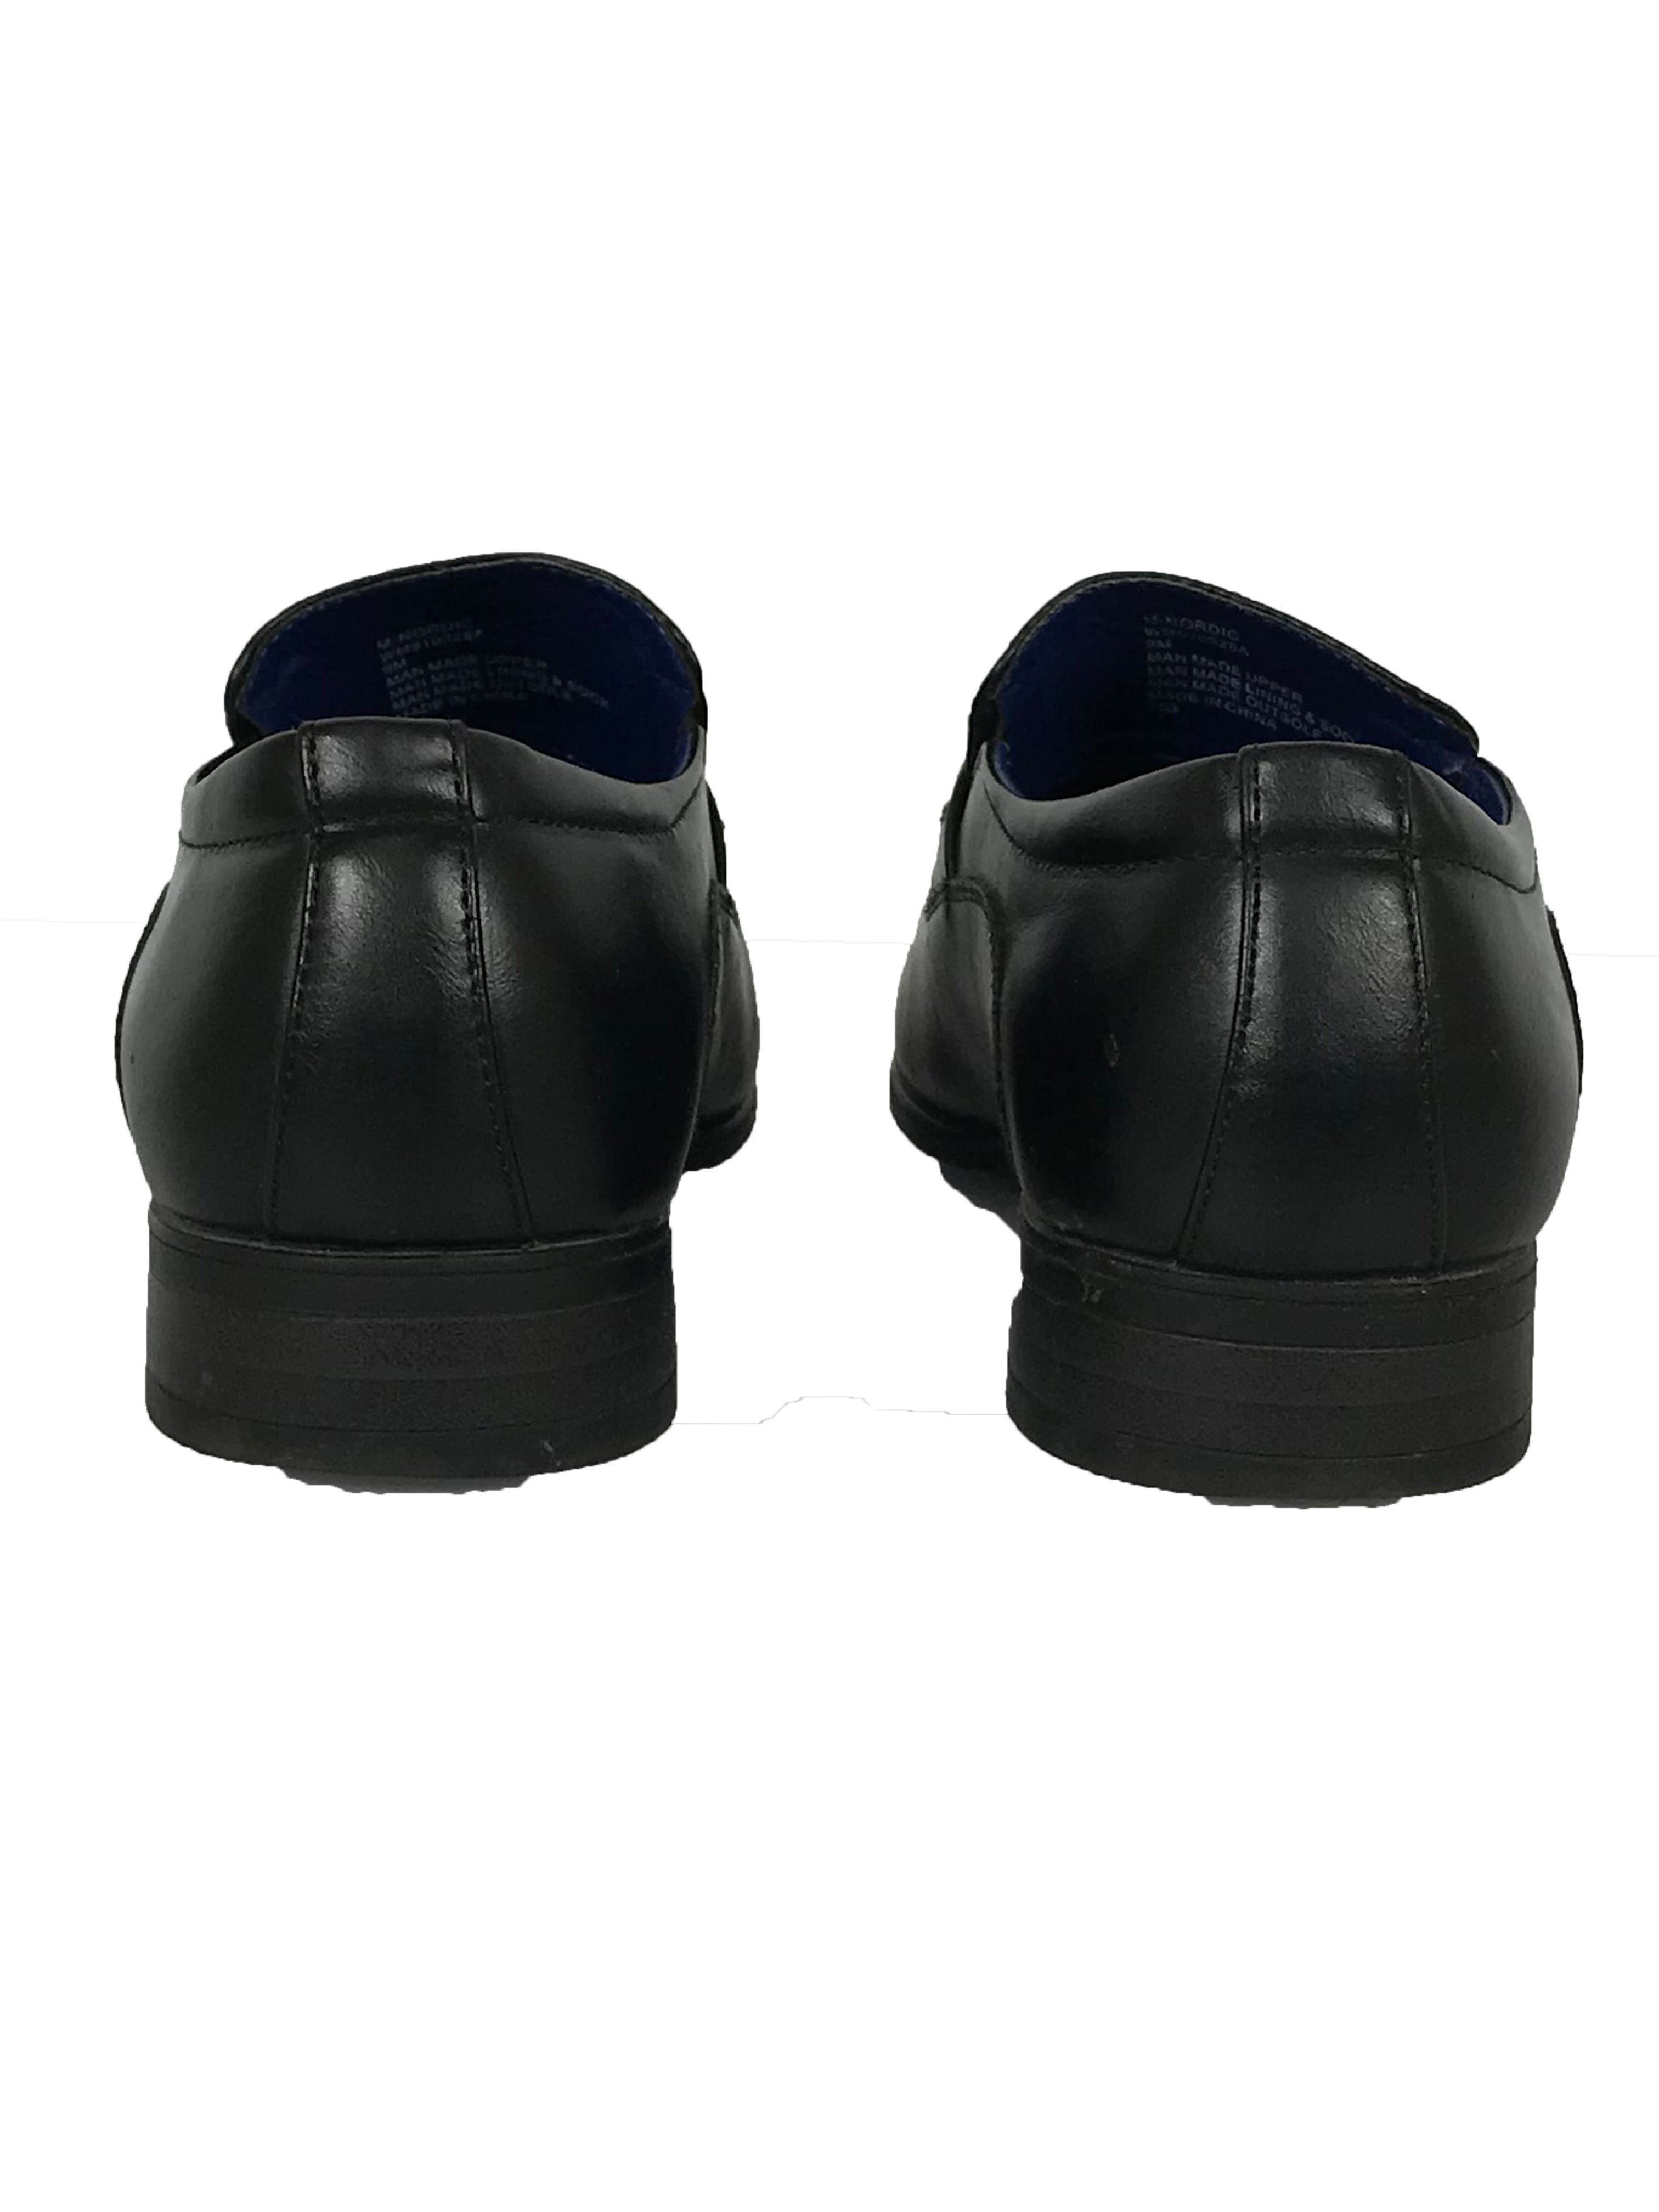 Steve Madden Black Leather Loafer Men's Size 9